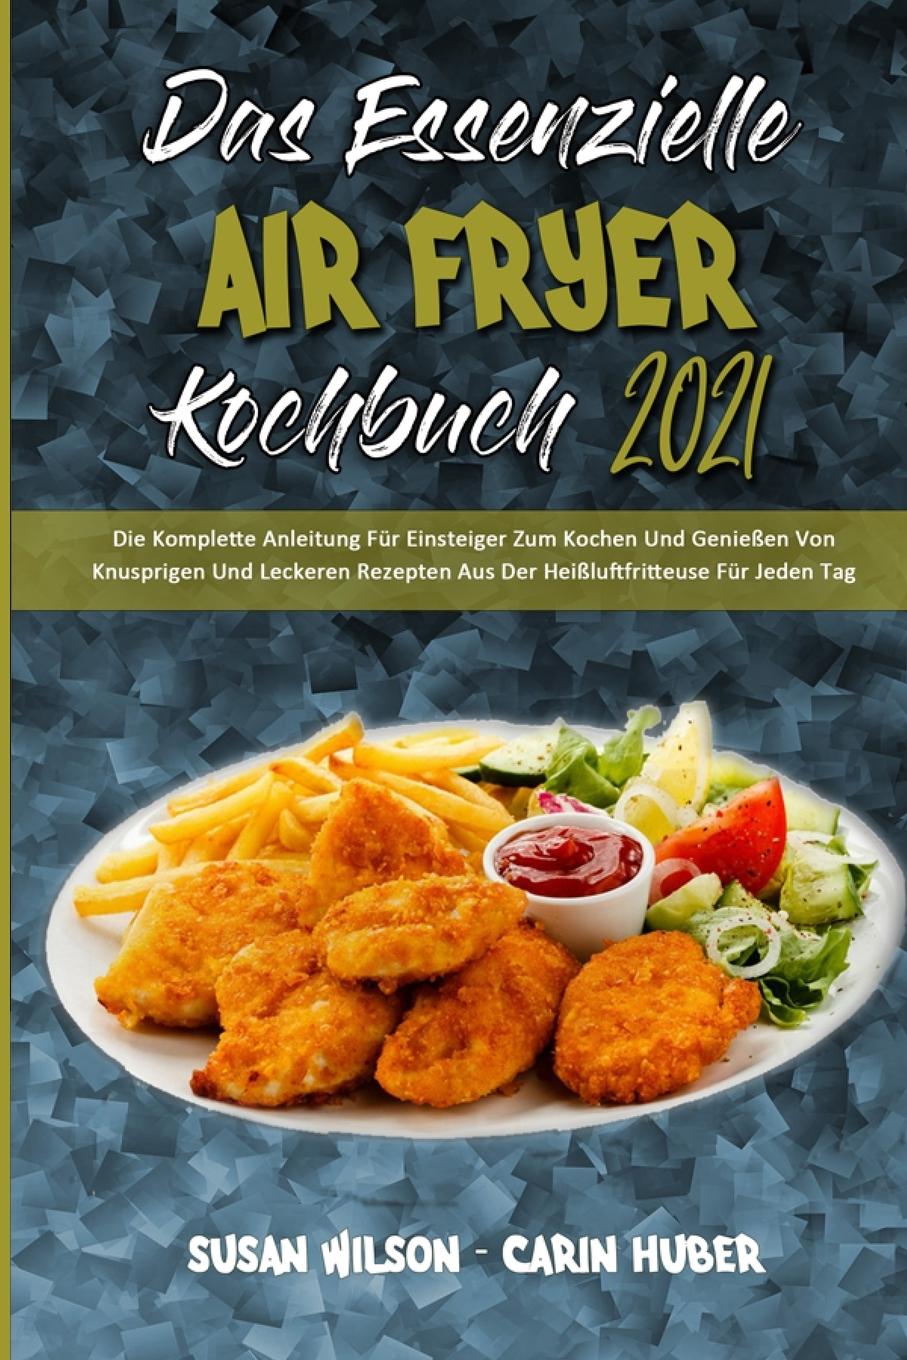 Carte Essenzielle Air Fryer Kochbuch 2021 Carin Huber